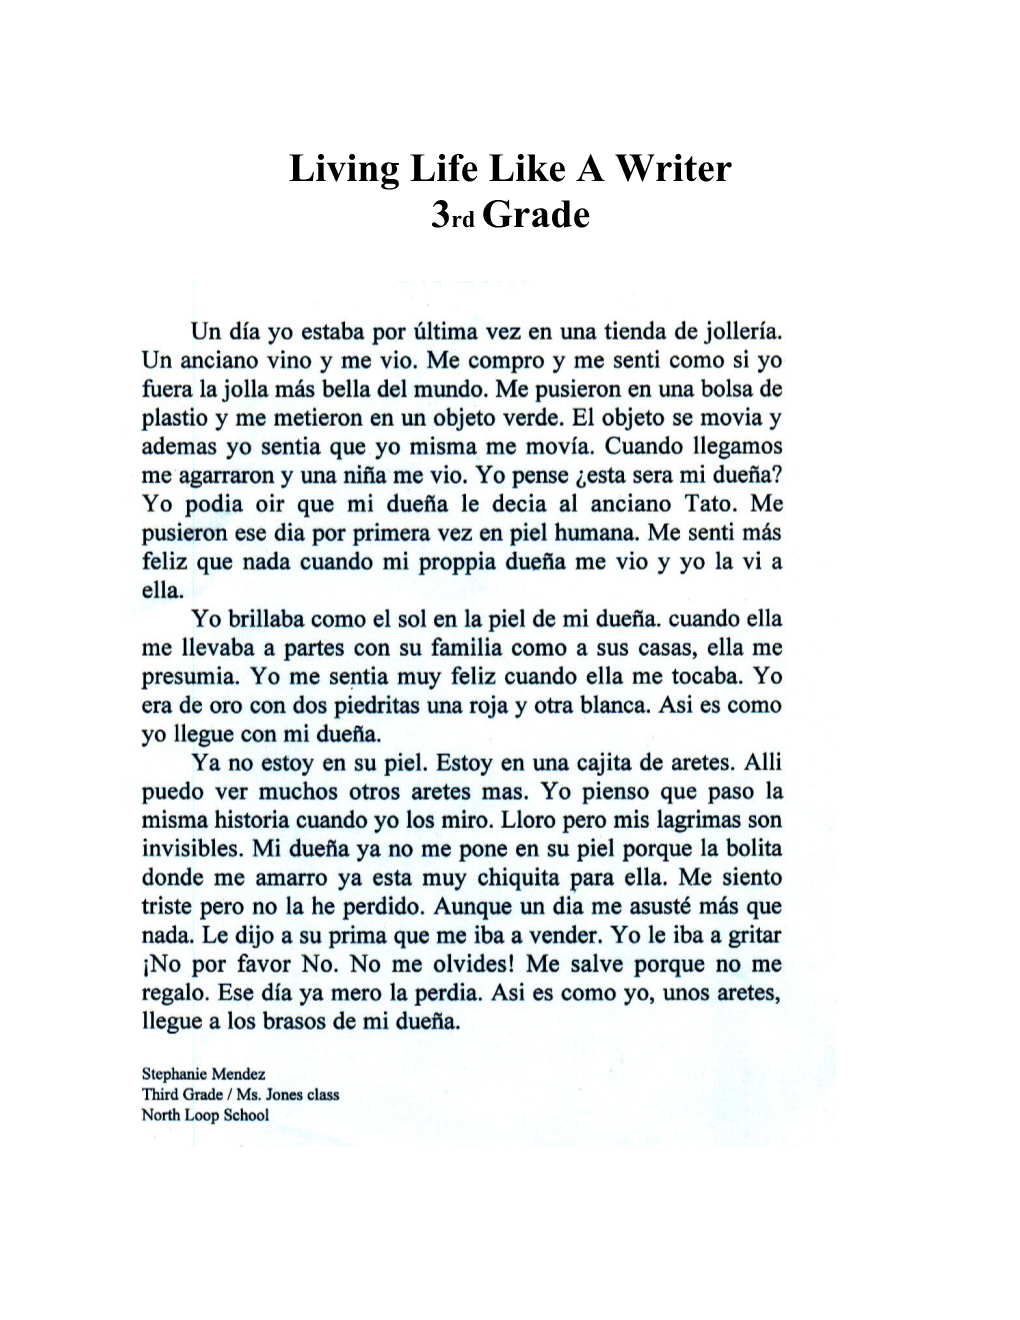 Living Life Like a Writer